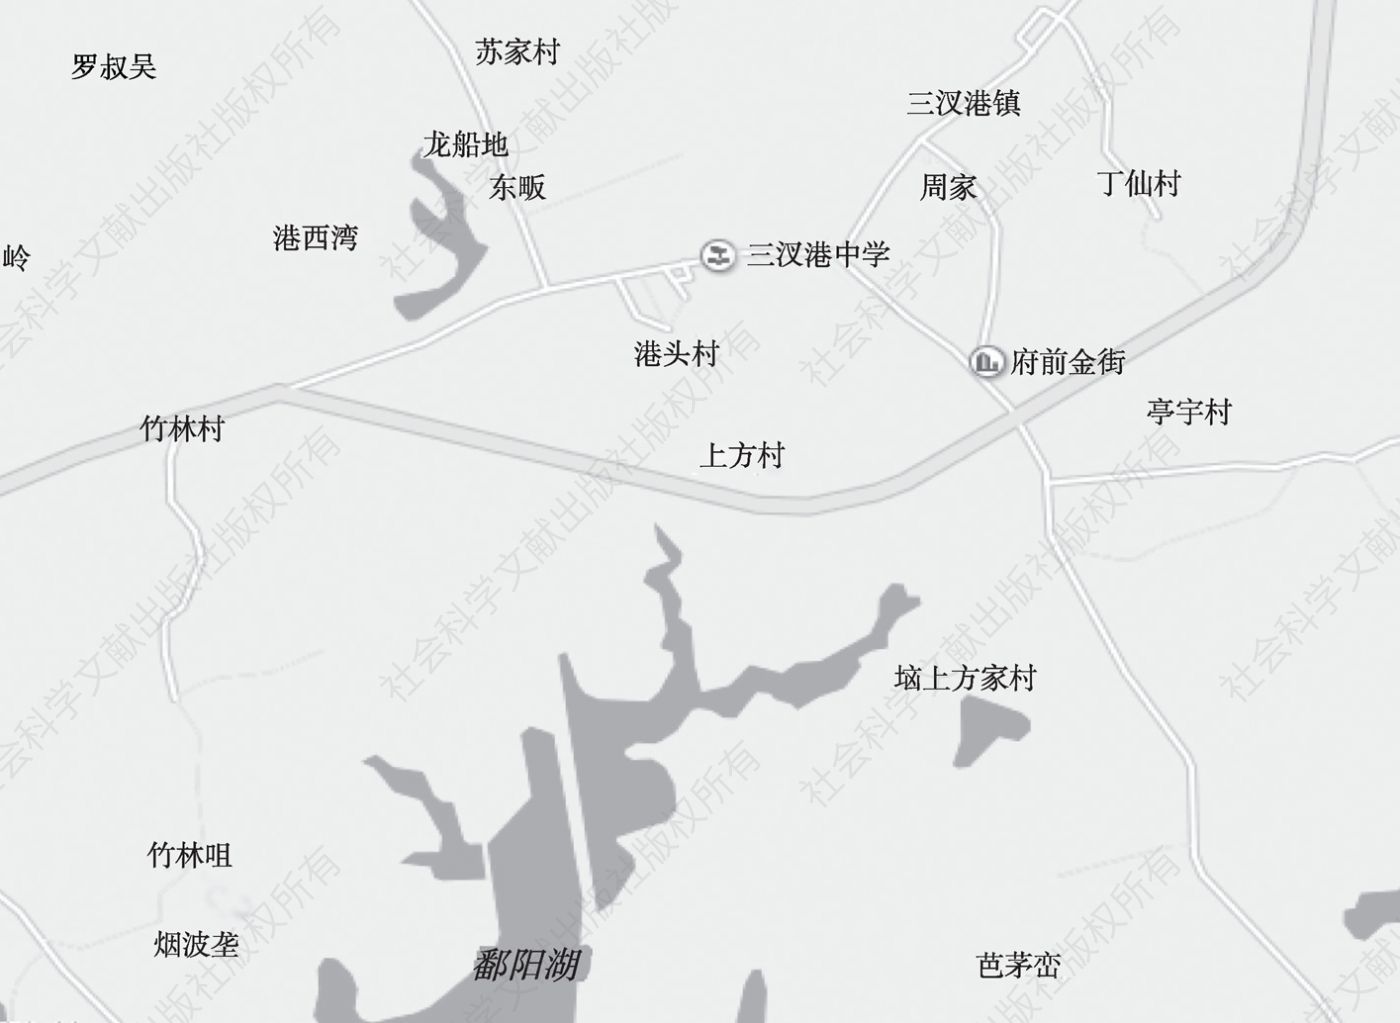 图1-4 港头行政村地理位置图